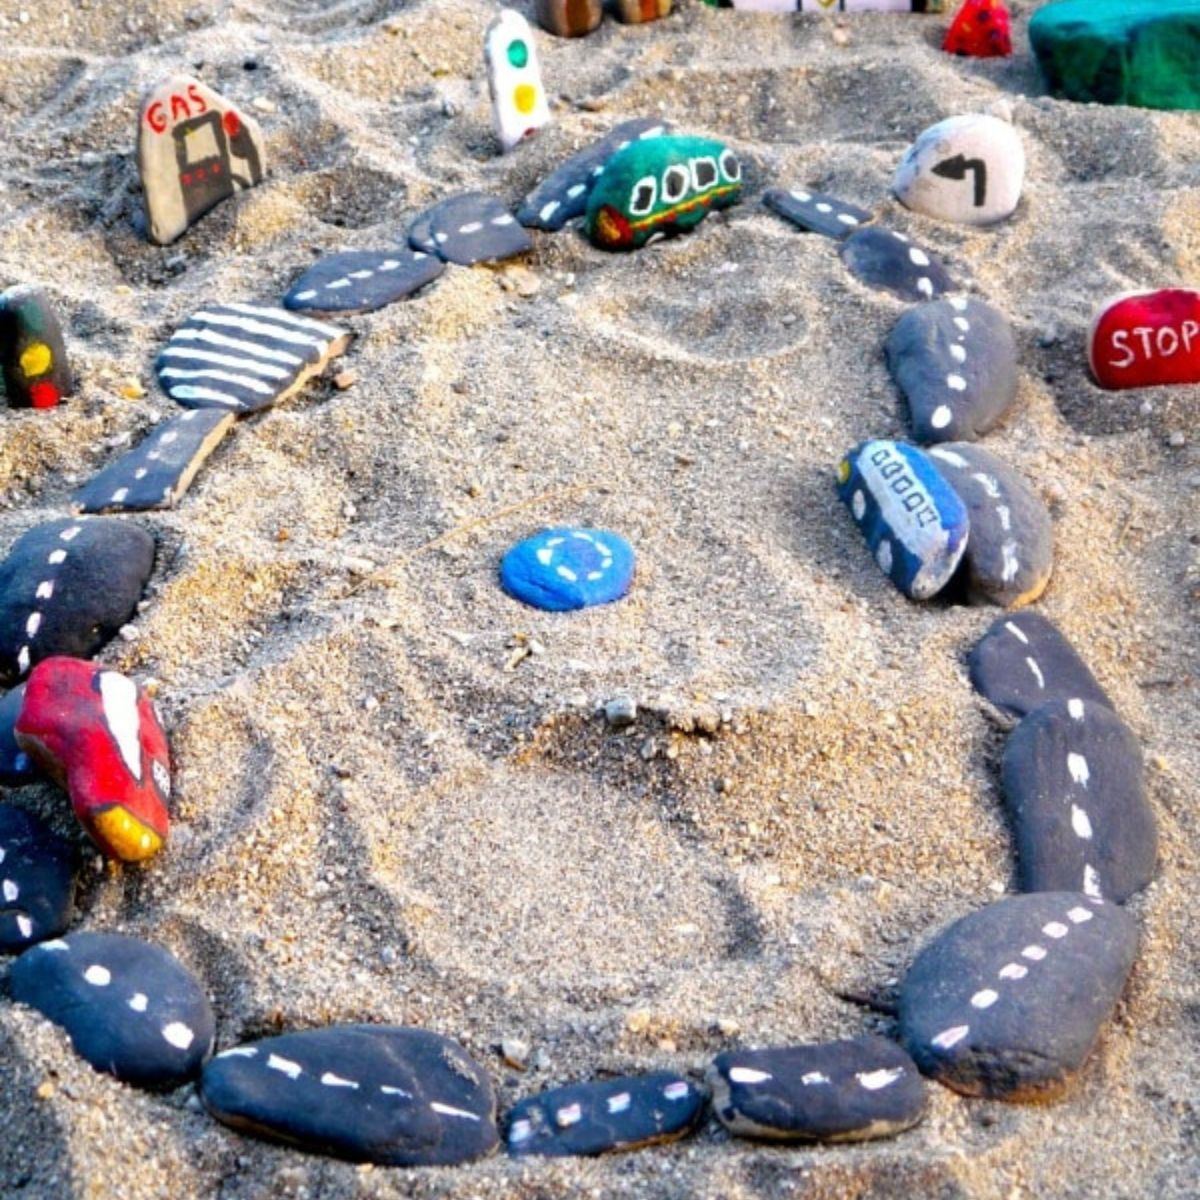 Diy car rock track on a beach,